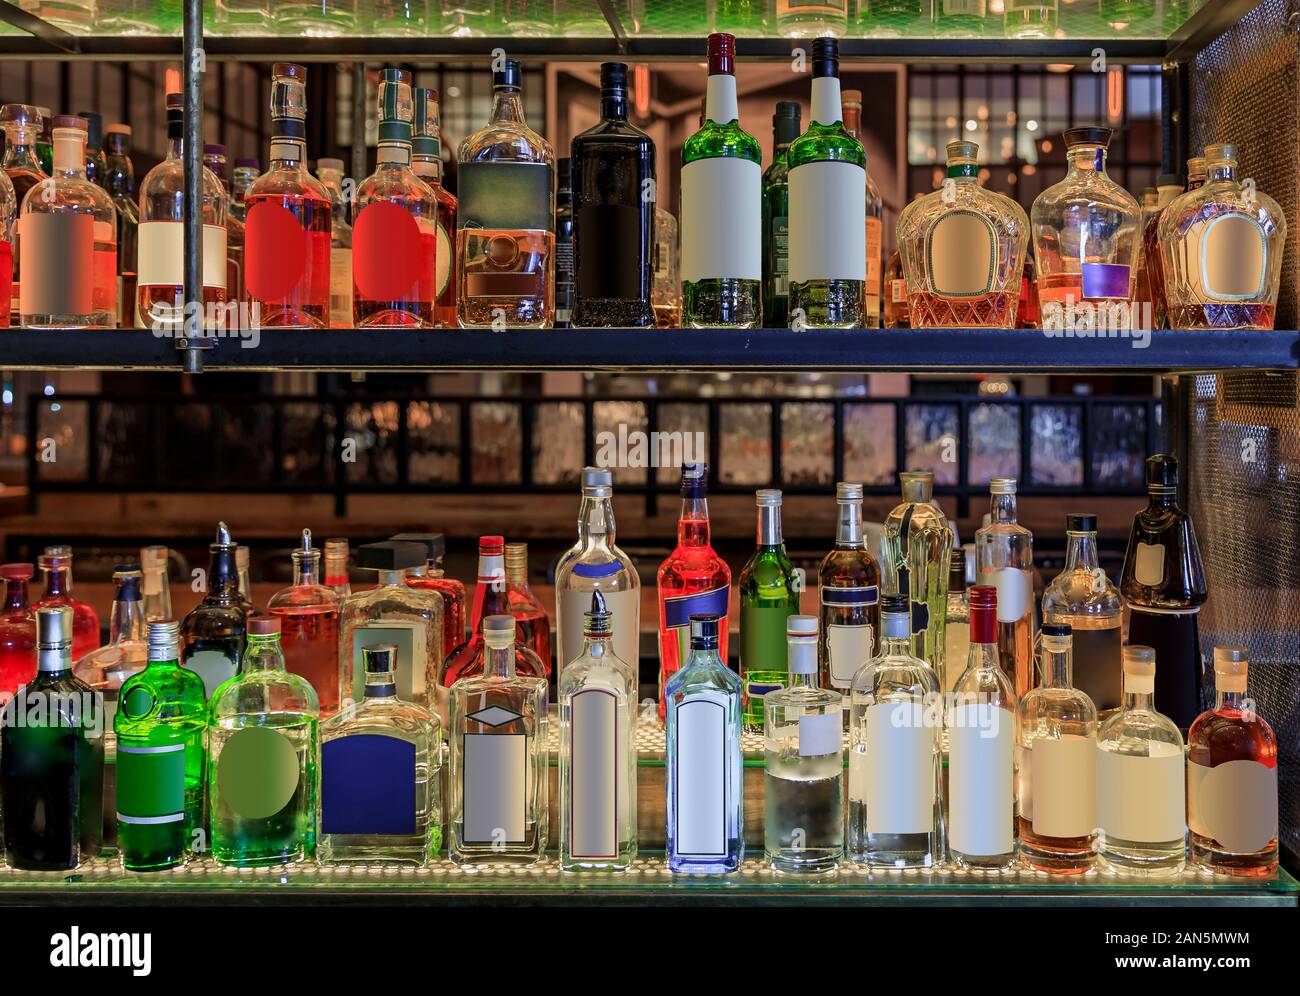 Auswahl an farbenfrohen Alkohol Flaschen in den Regalen auf Anzeige in einer Bar in New York, Vereinigte Staaten von Amerika, alle Logos und Labels entfernt Stockfoto